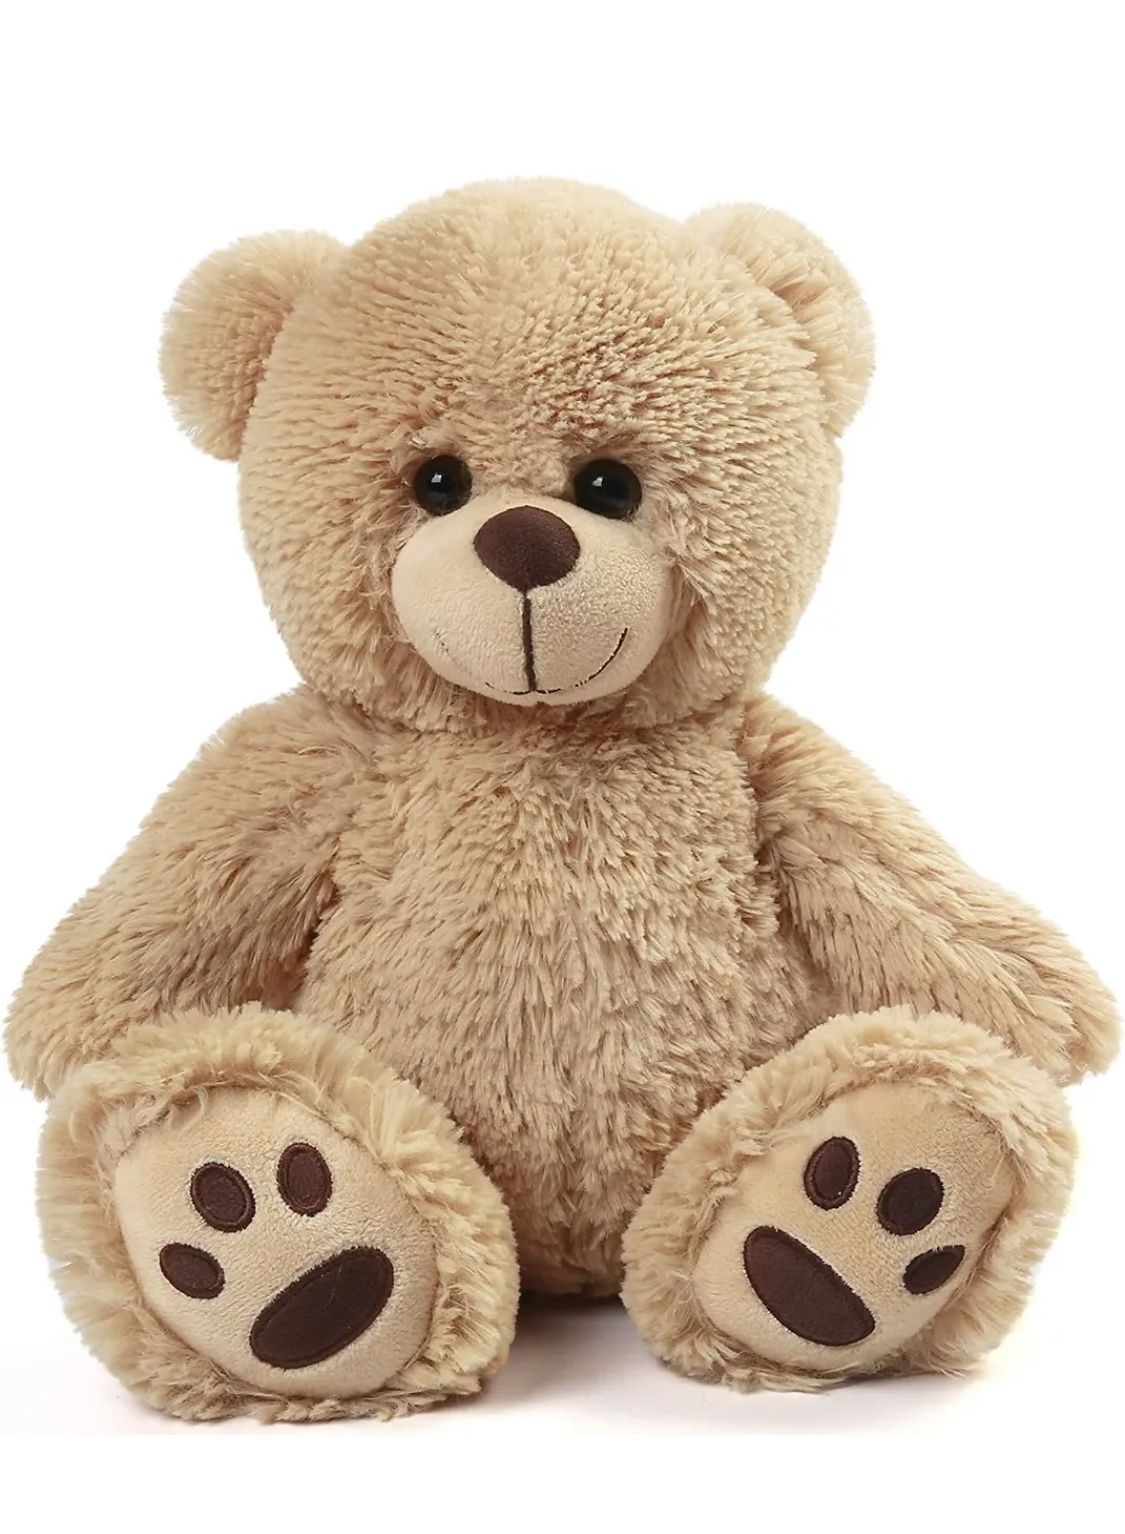 Teddy Bear Stuffed Animal, 15 Inch Brown Teddy Bear Plush Toy, Cute Hugging Gift